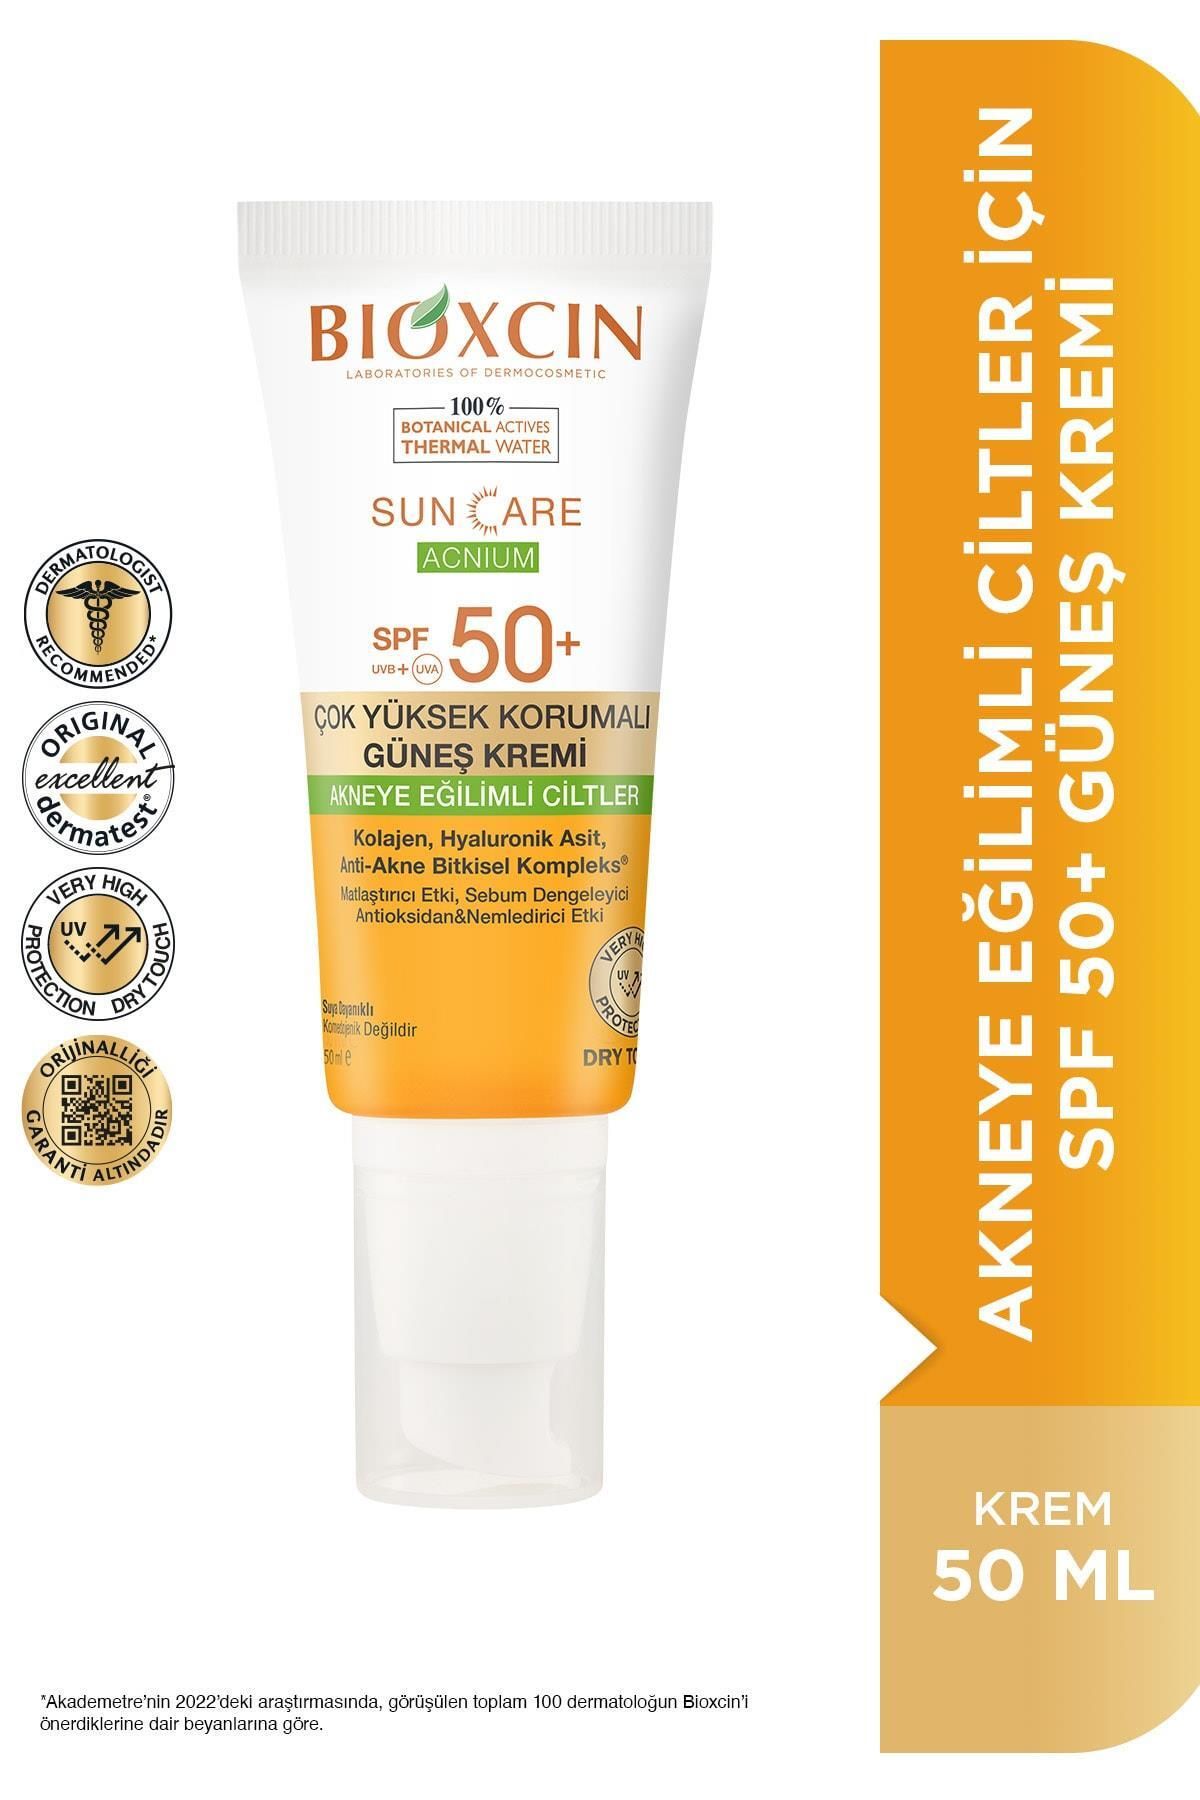 Bioxcin Sun Care Acnium Spf50 Akneye Eğilimli Ciltler Için Güneş Kremi 50 ml